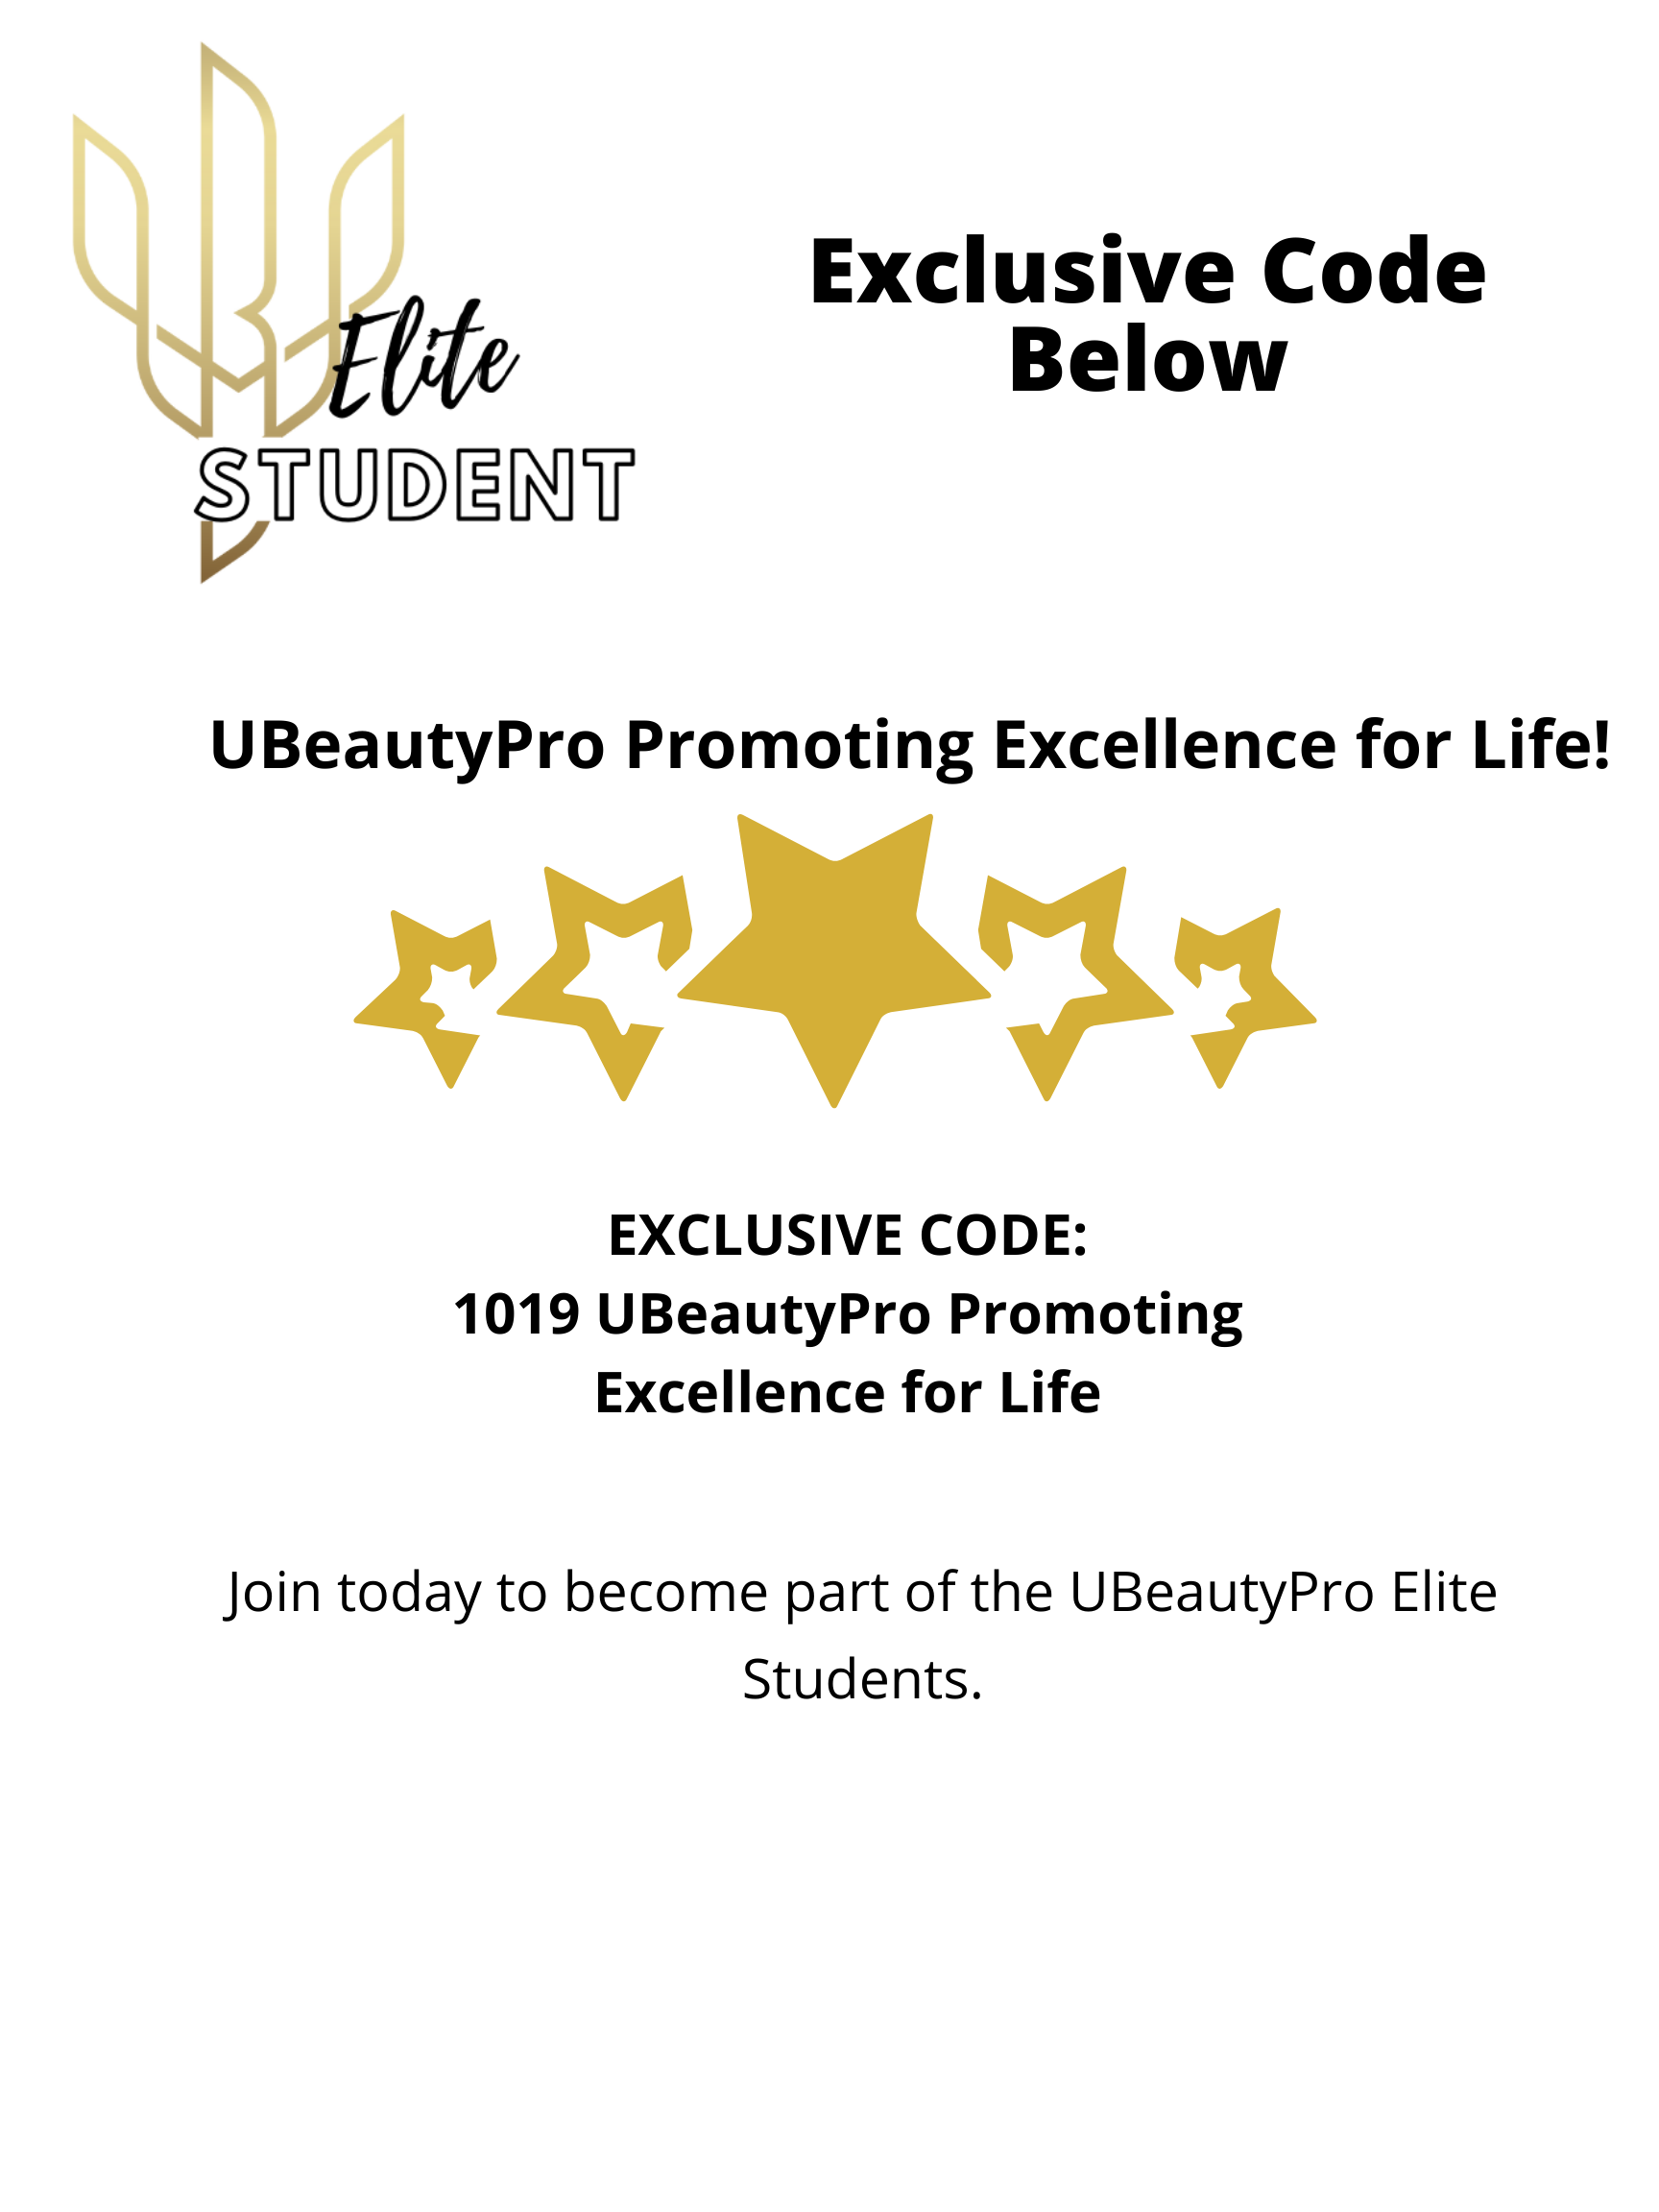 UBeautyPro Elite Students